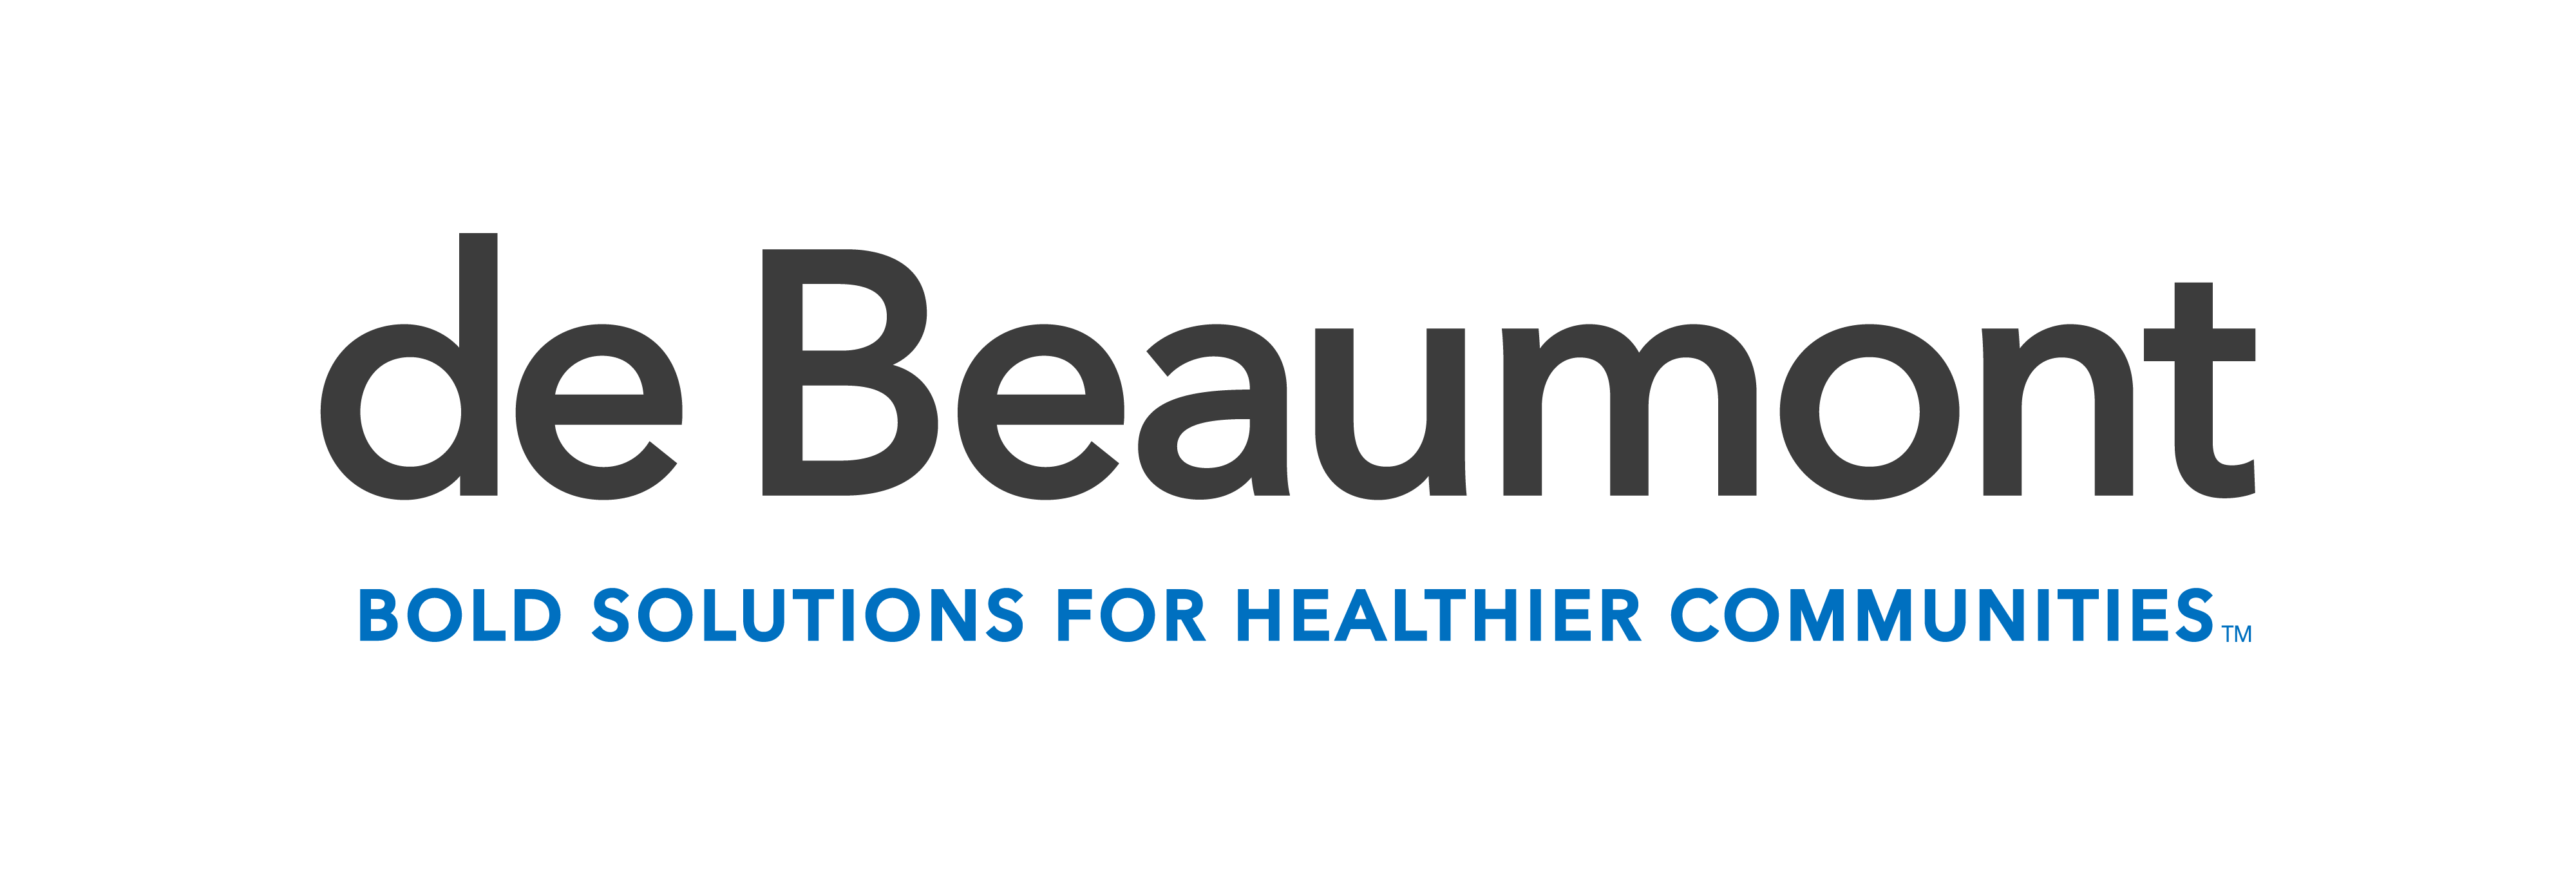 de Beaumont Foundation logo